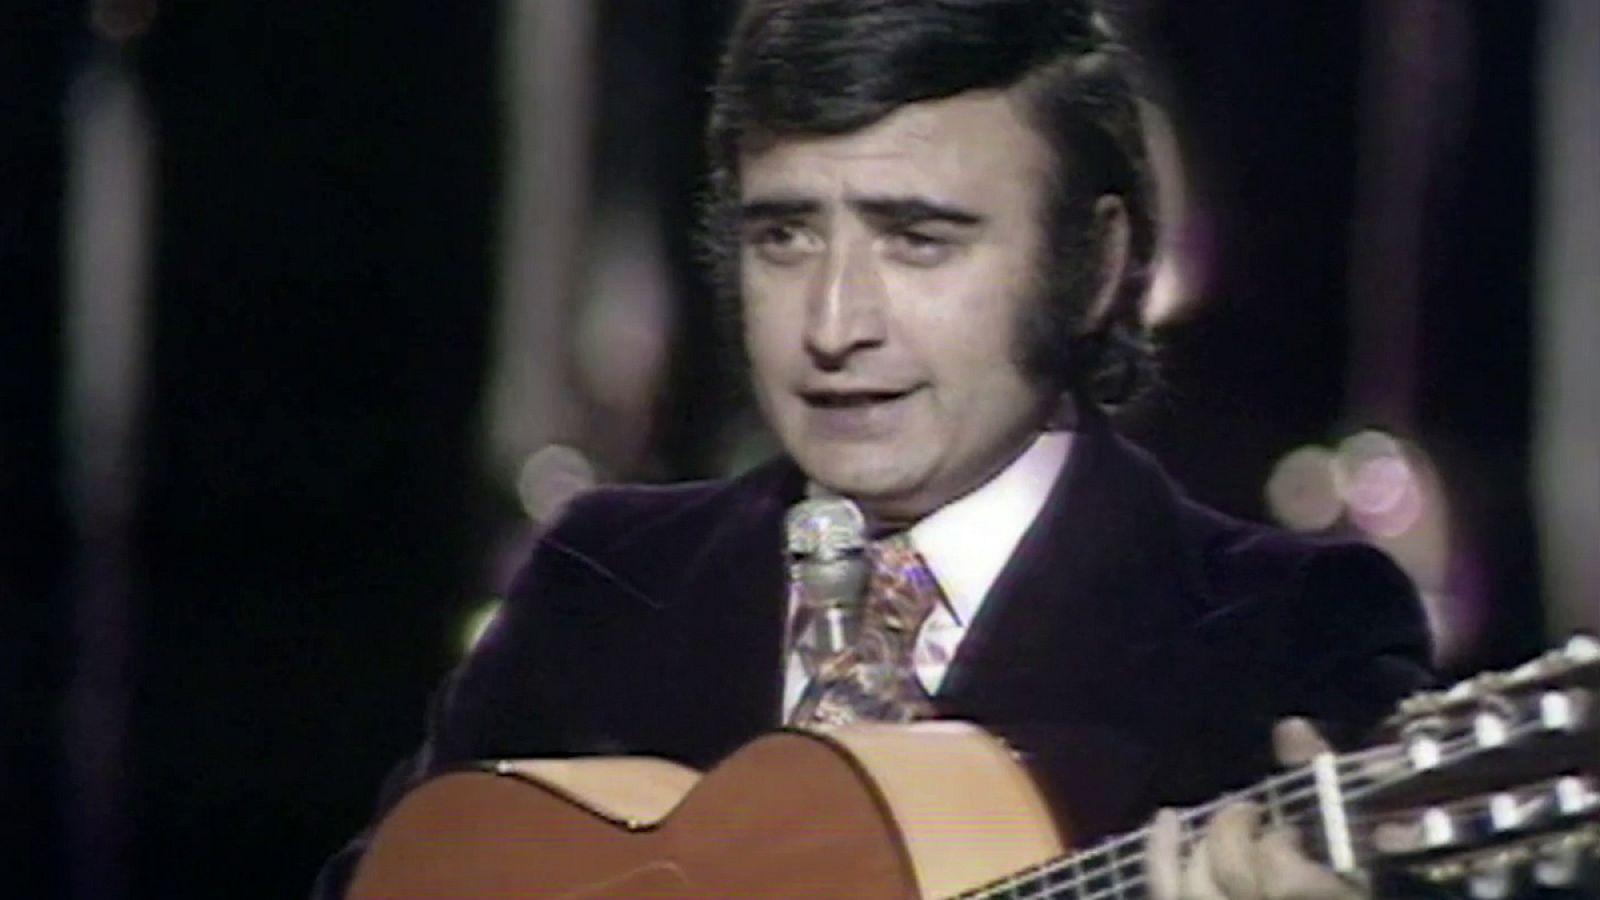 Festival de Eurovisión 1974 - Peret cantó "Canta y sé feliz"